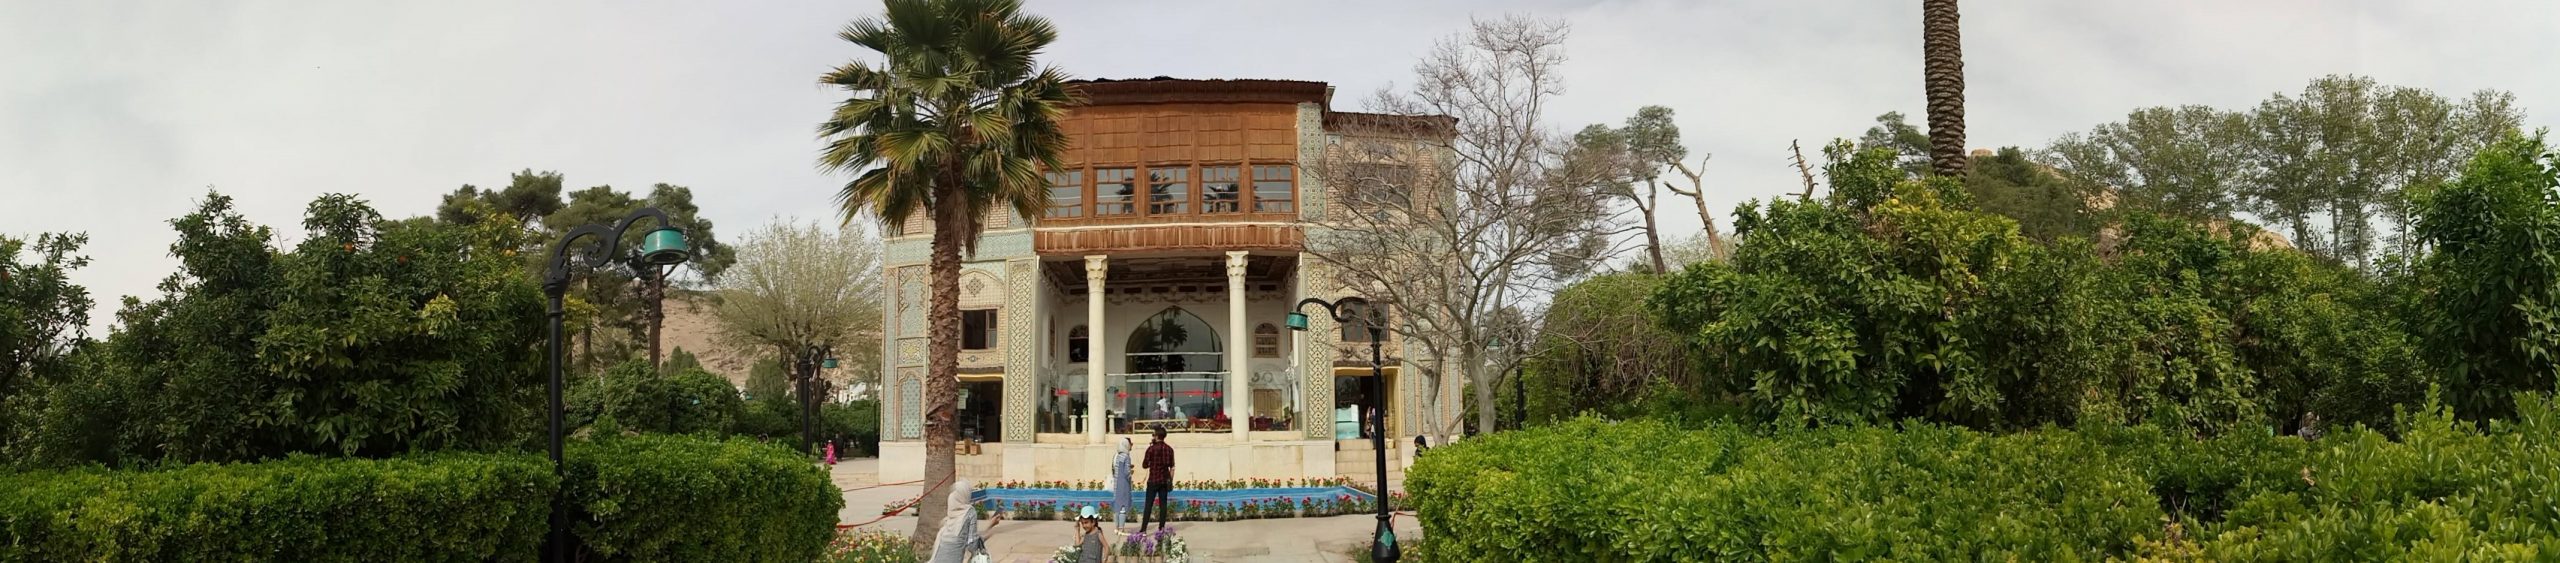 Delgosha Garden of Shiraz